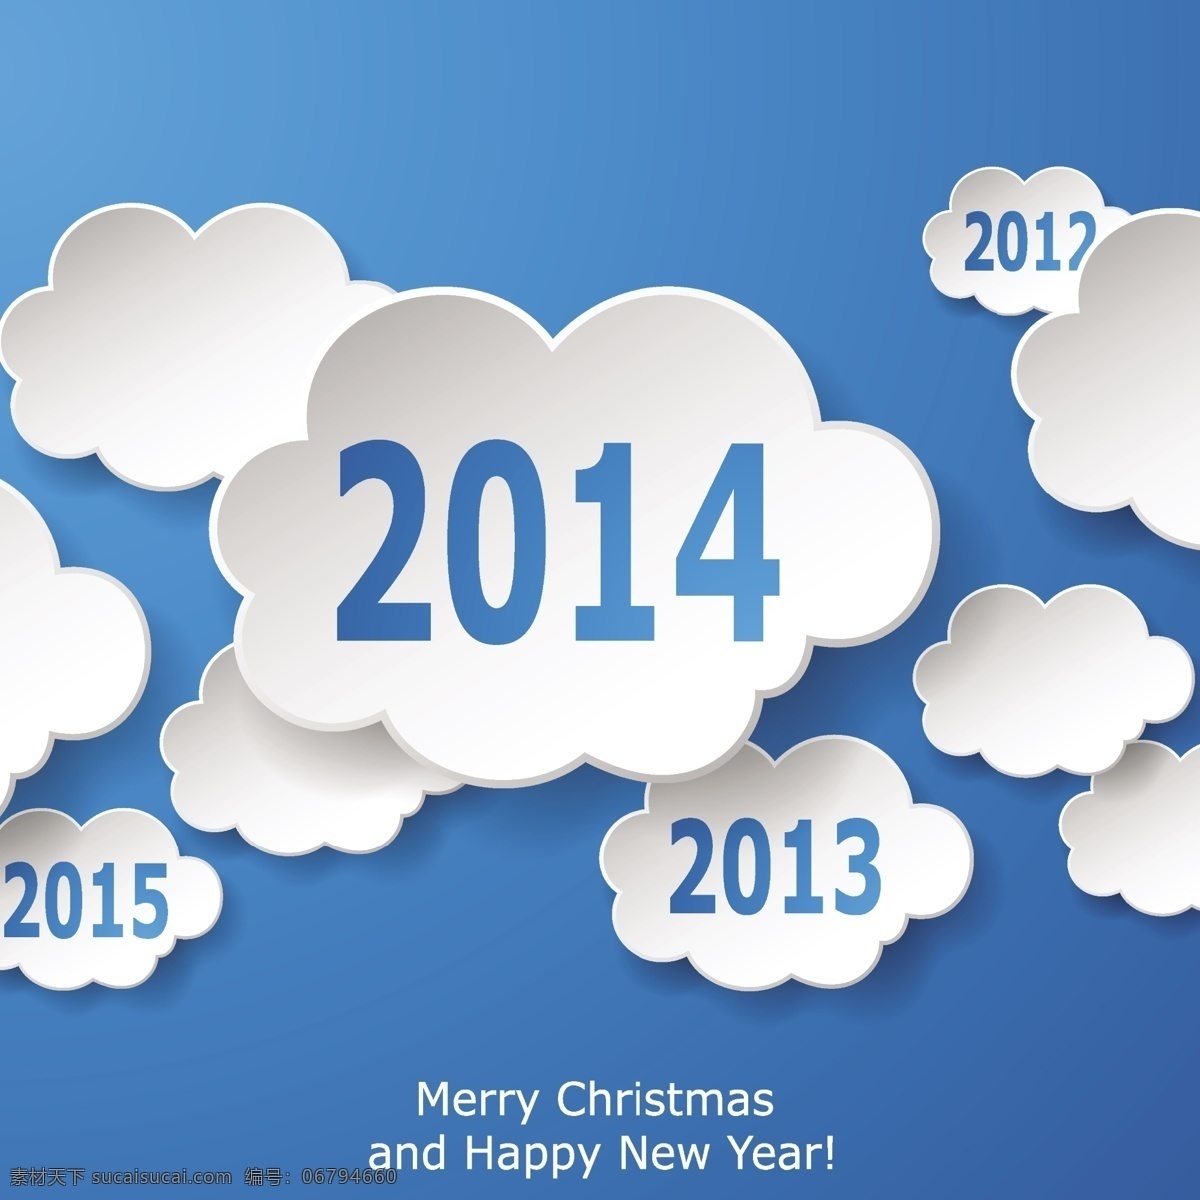 年 分 云朵 2014 新年 快乐 背景 云主题设计 创意云朵设计 蓝天 立体贴纸白云 年份 生活百科 矢量素材 白色